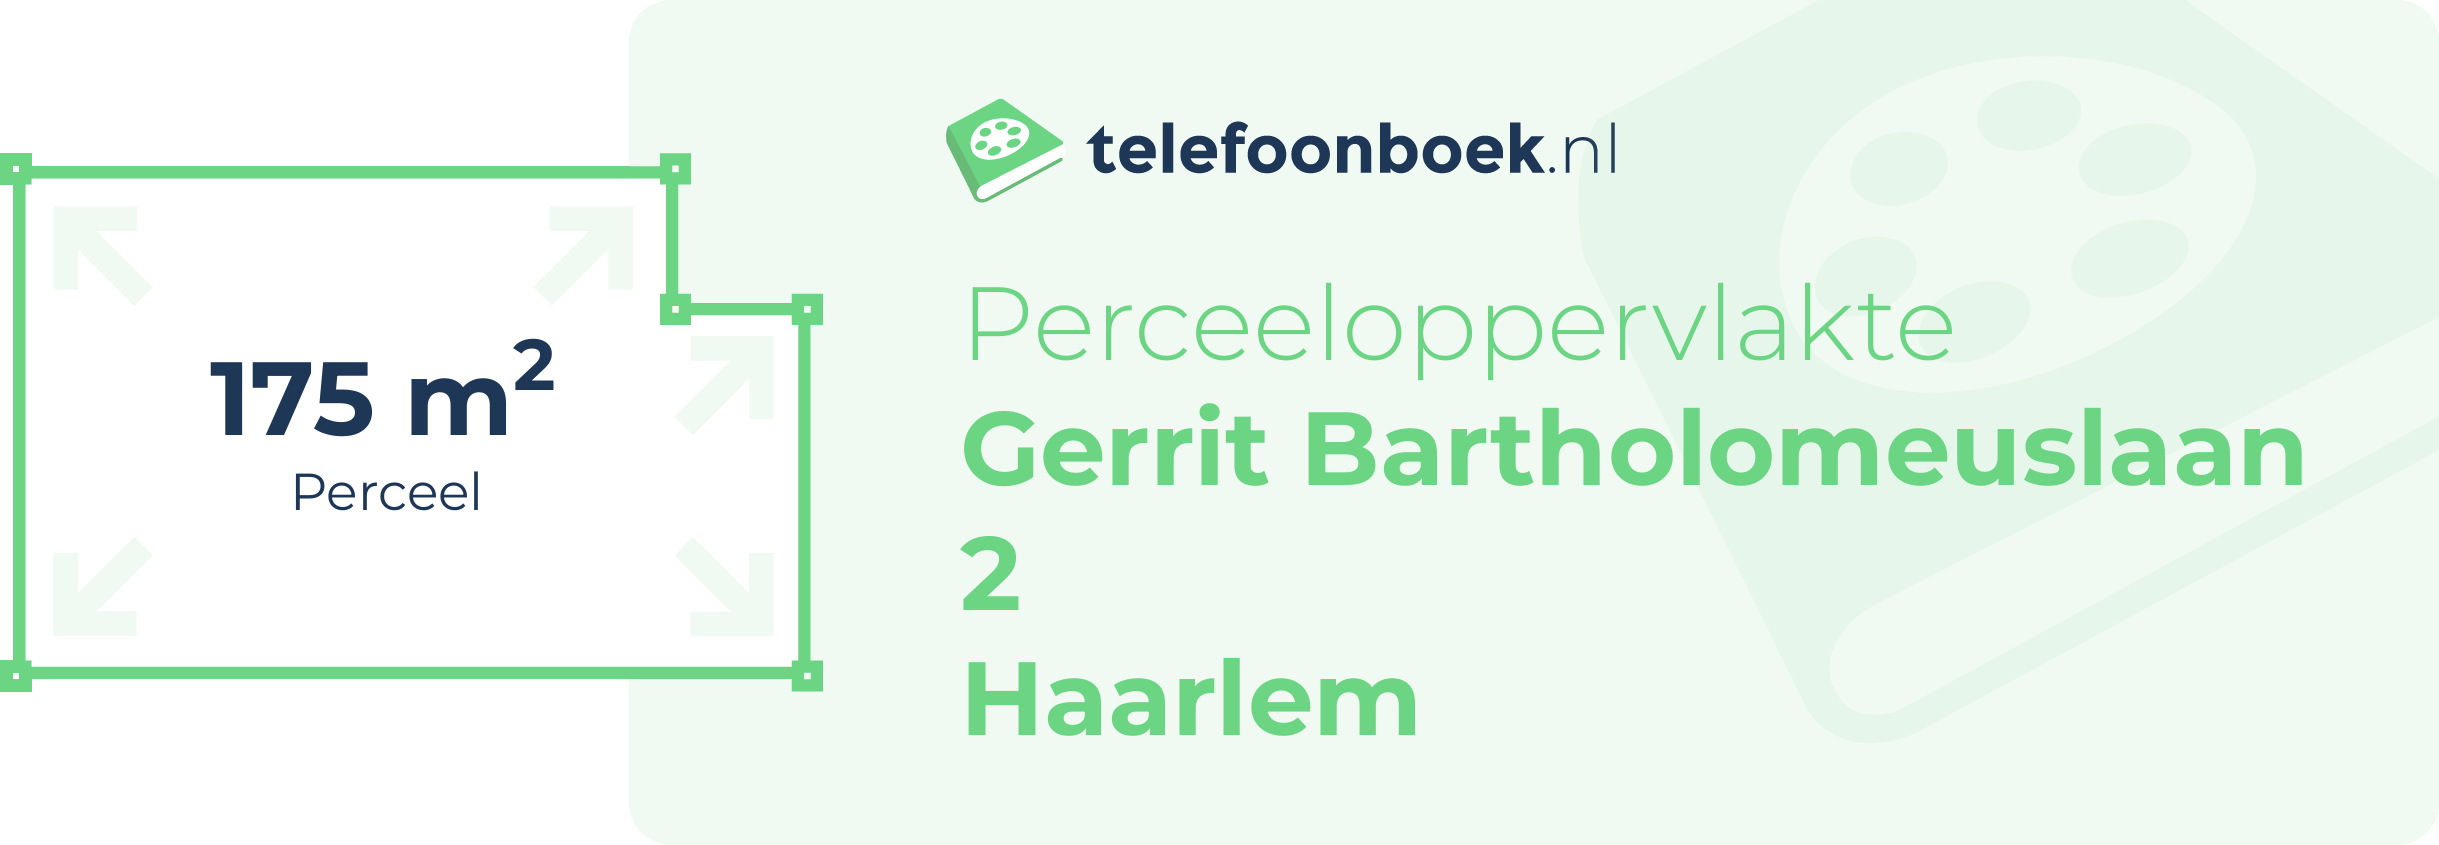 Perceeloppervlakte Gerrit Bartholomeuslaan 2 Haarlem